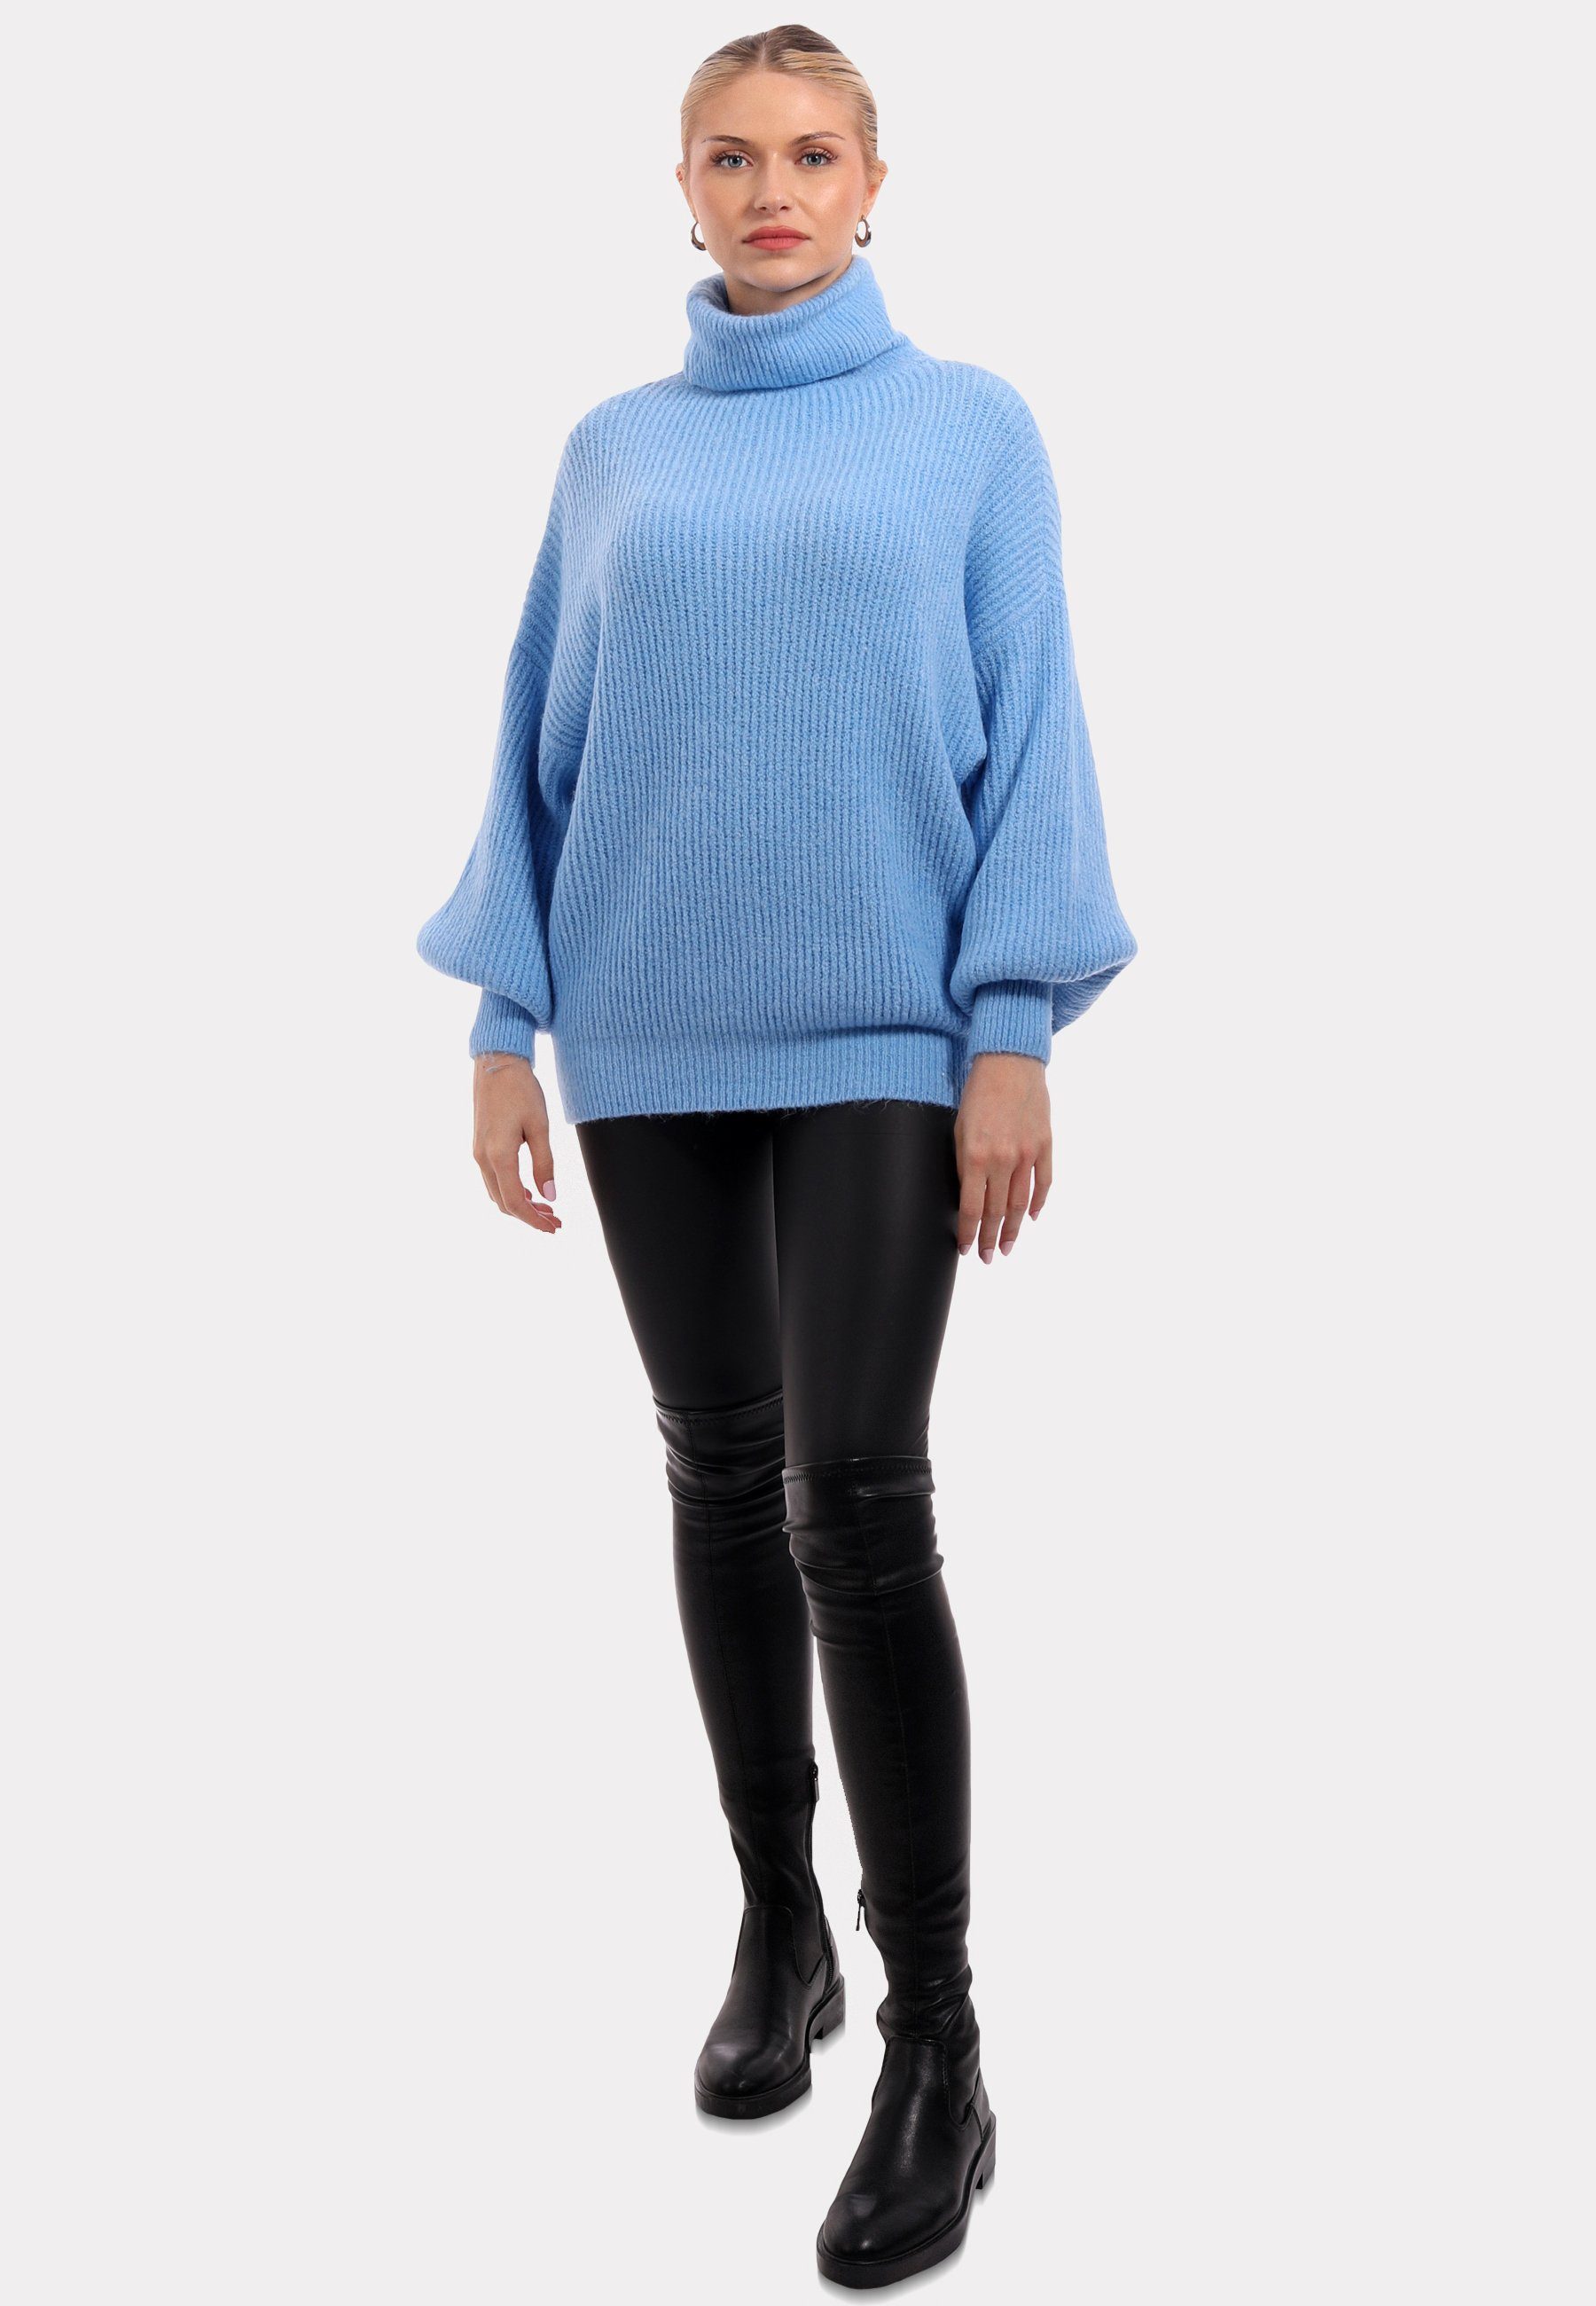 Blau in mit Rollkragen Fashion Rollkragenpullover YC Unifarbe Pullover Sweater & Winter Casual Style